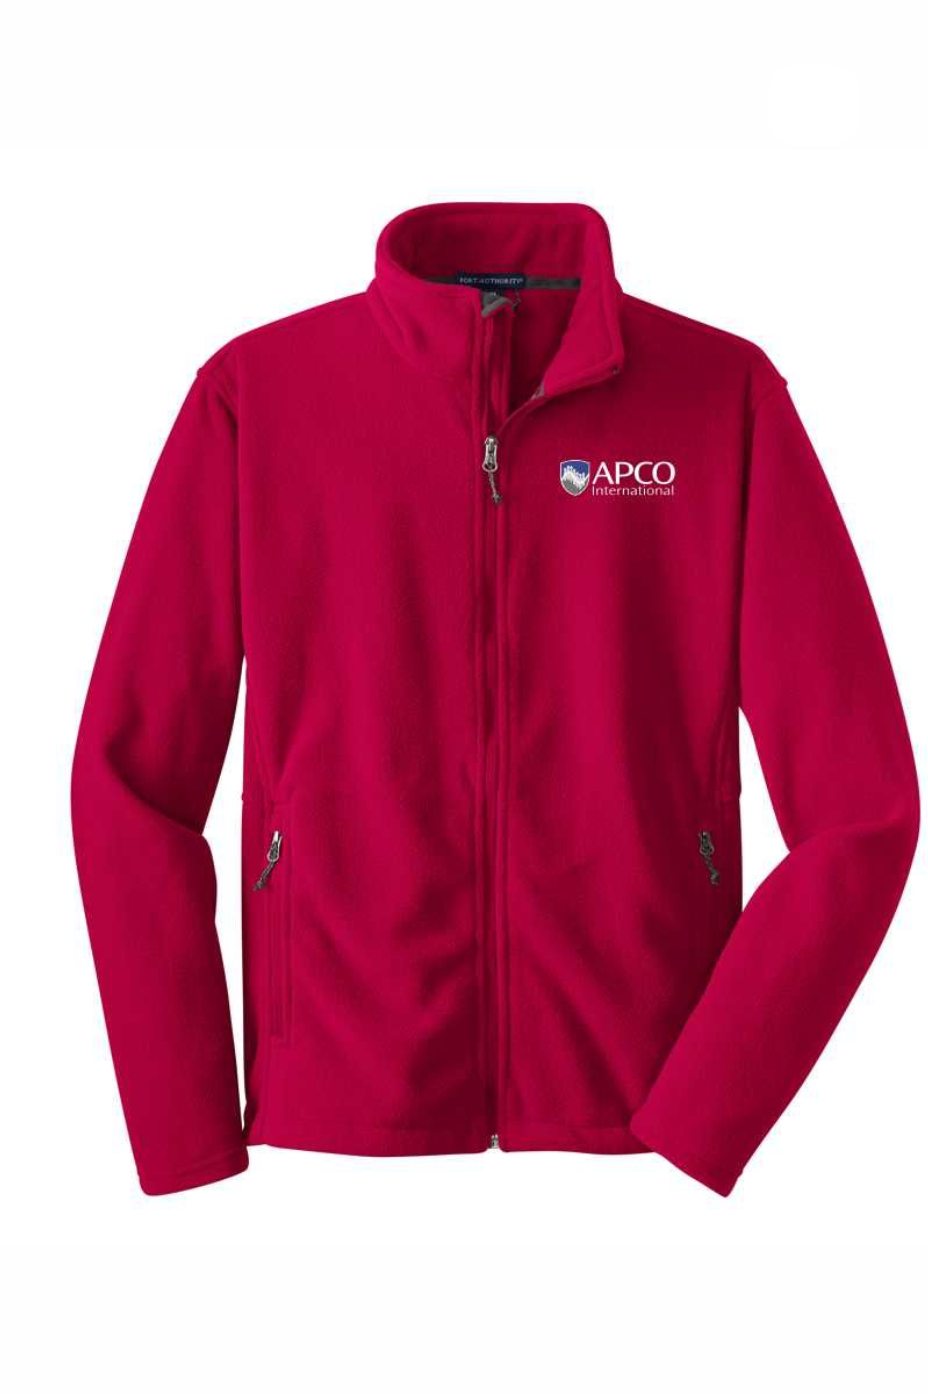 APCO - Port Authority Value Fleece Jacket